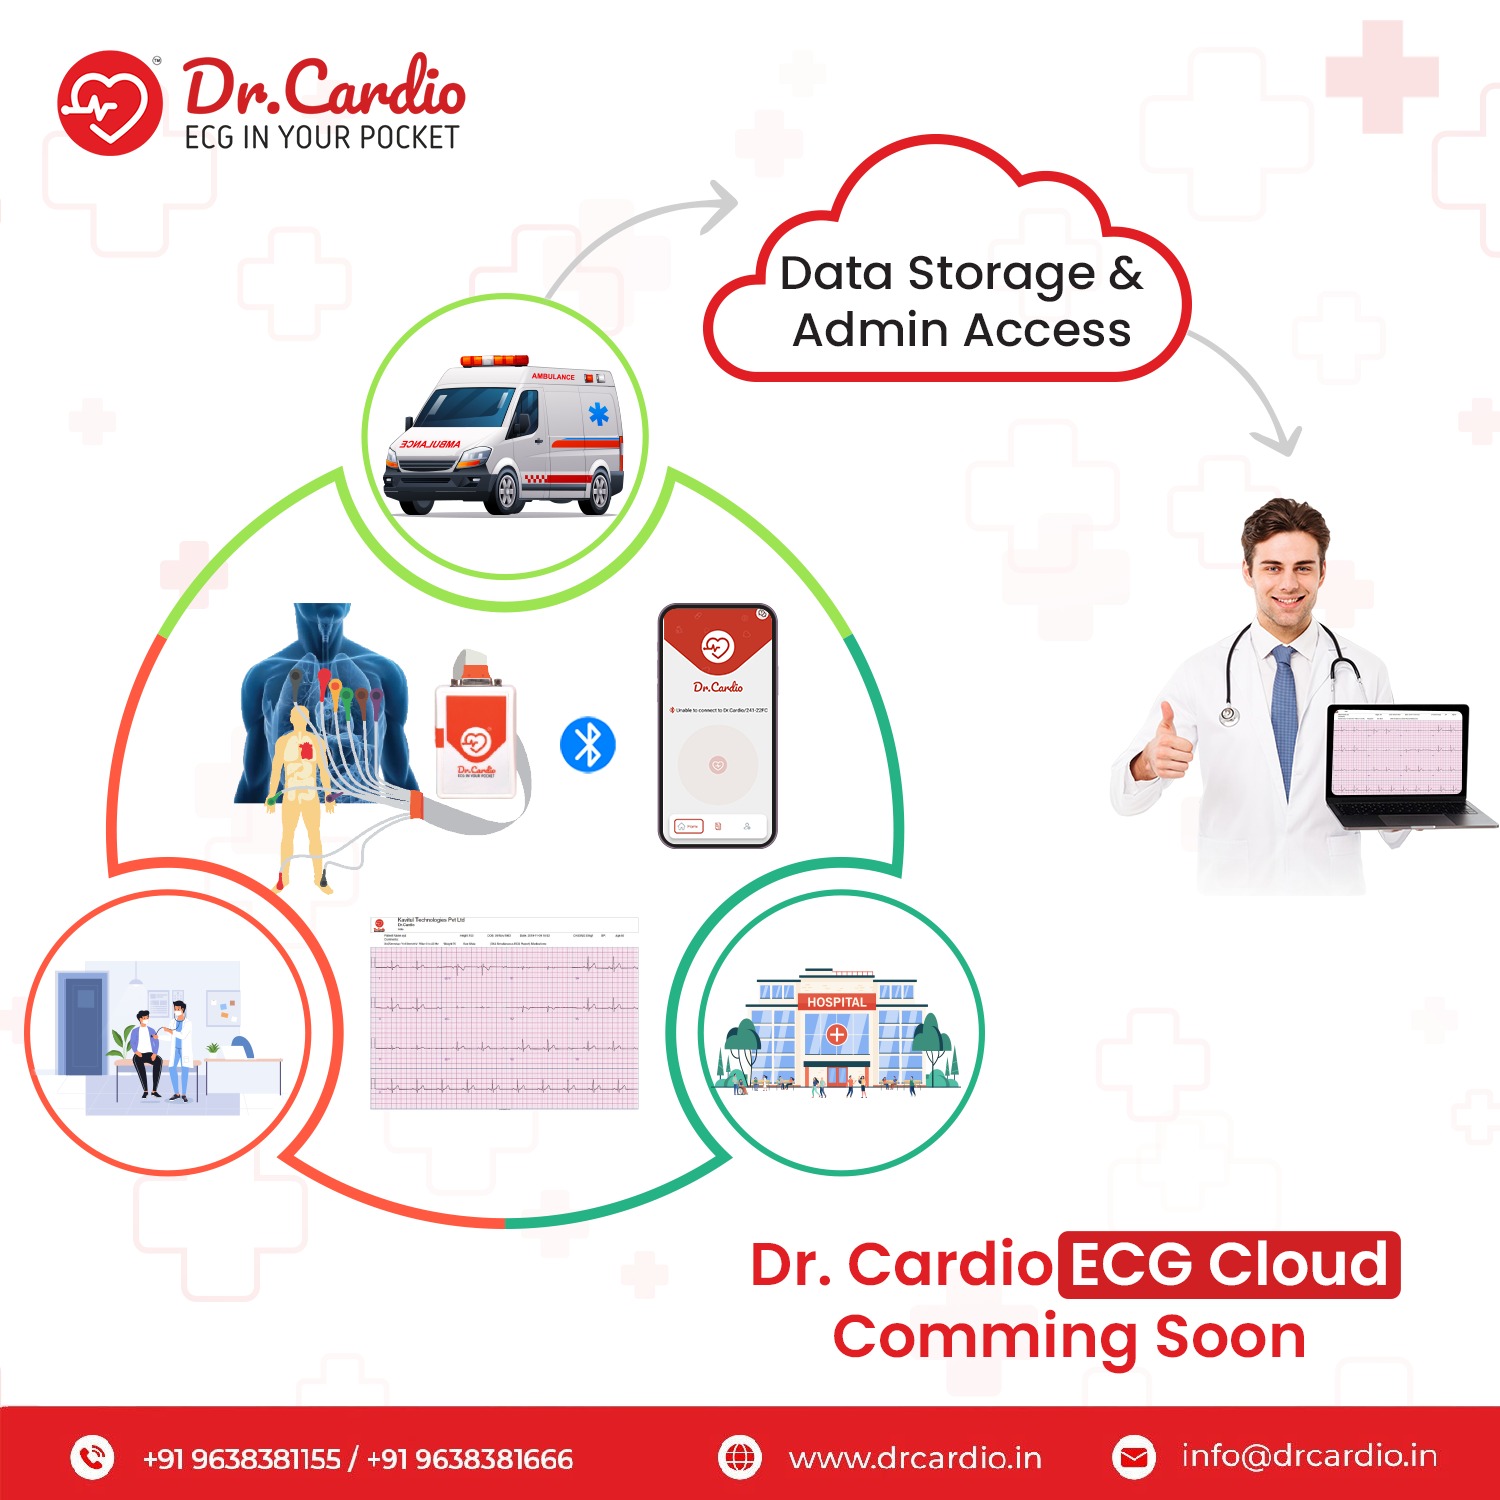 Dr. Cardio ECG Cloud System